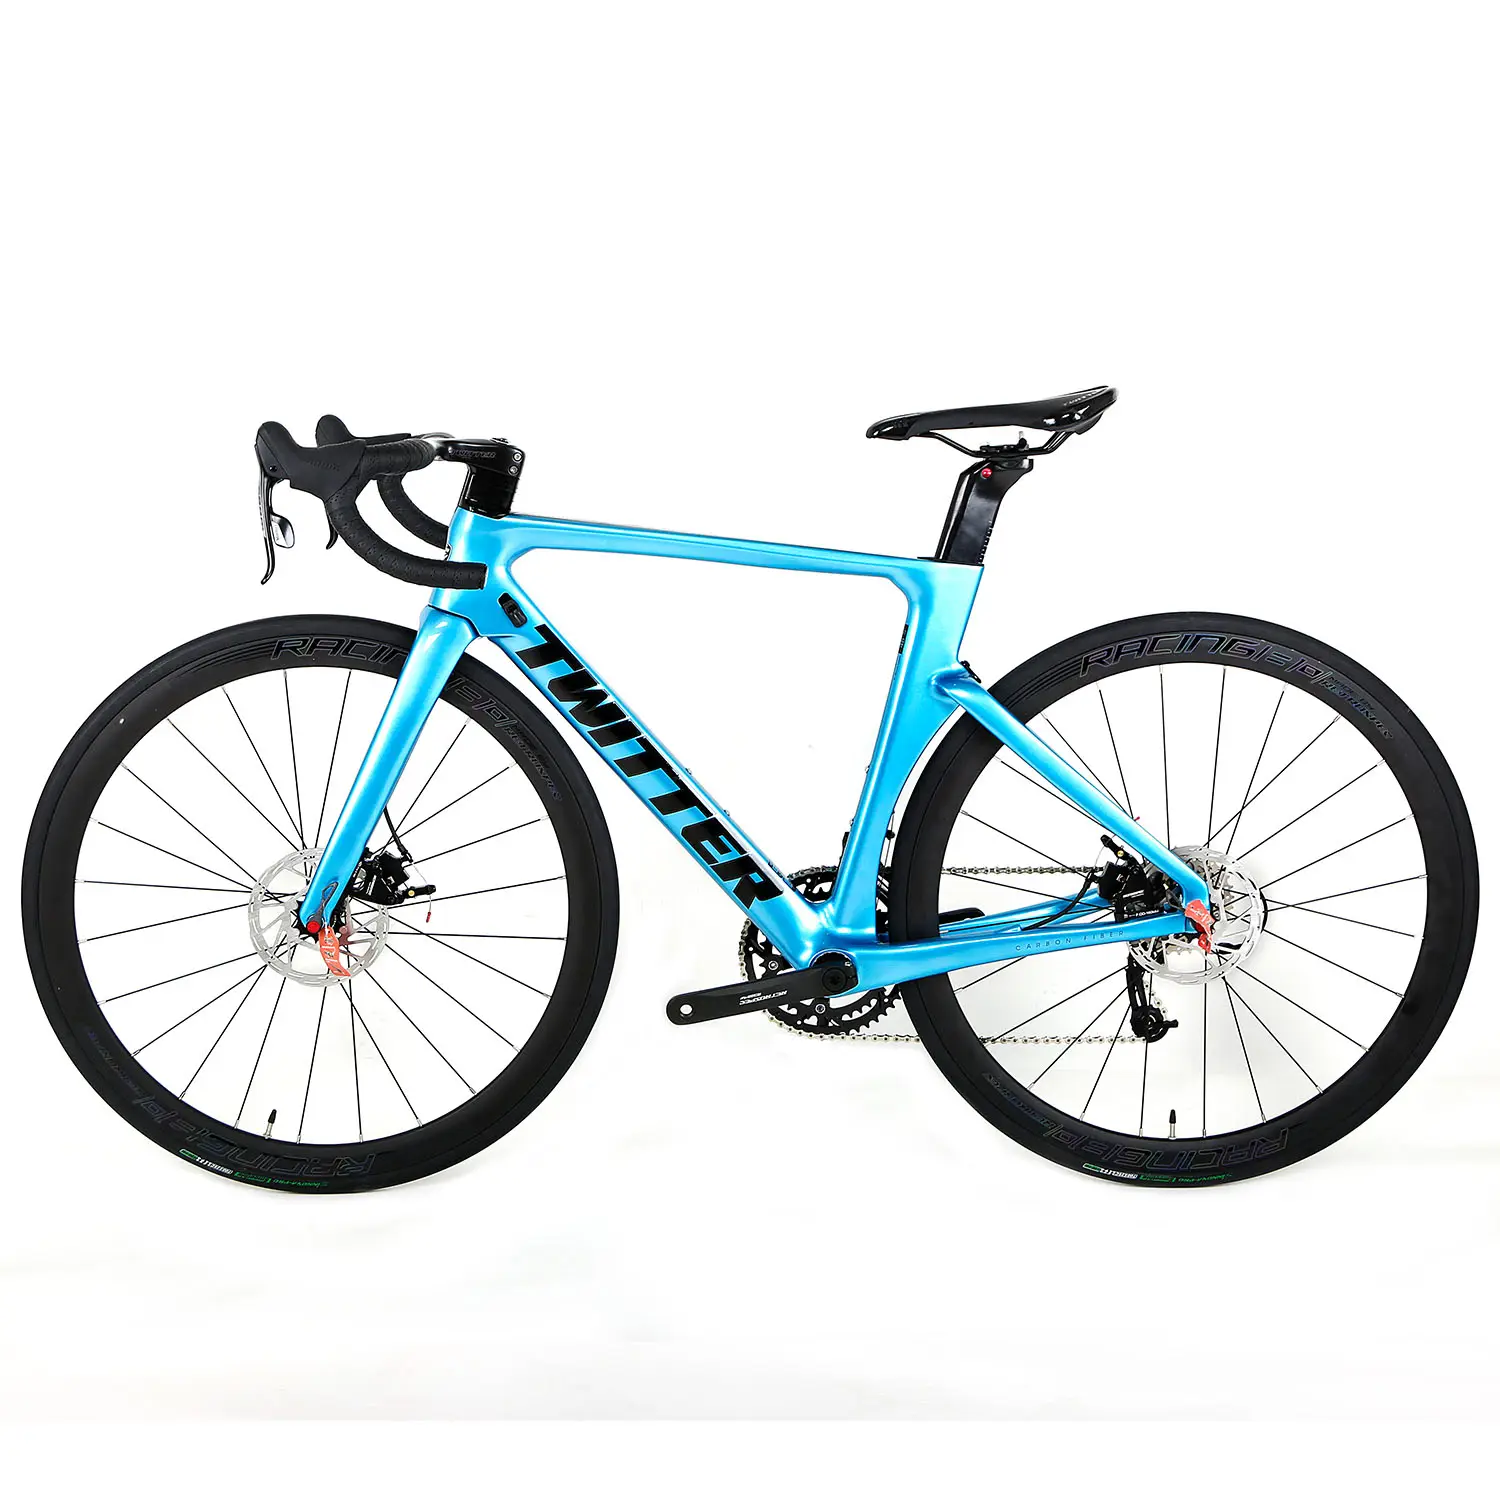 Twitter yol bisikleti R3 aero karbon fiber çerçeve 24 hız yarış çerçeve hidrolik disk fren karbon bisiklet